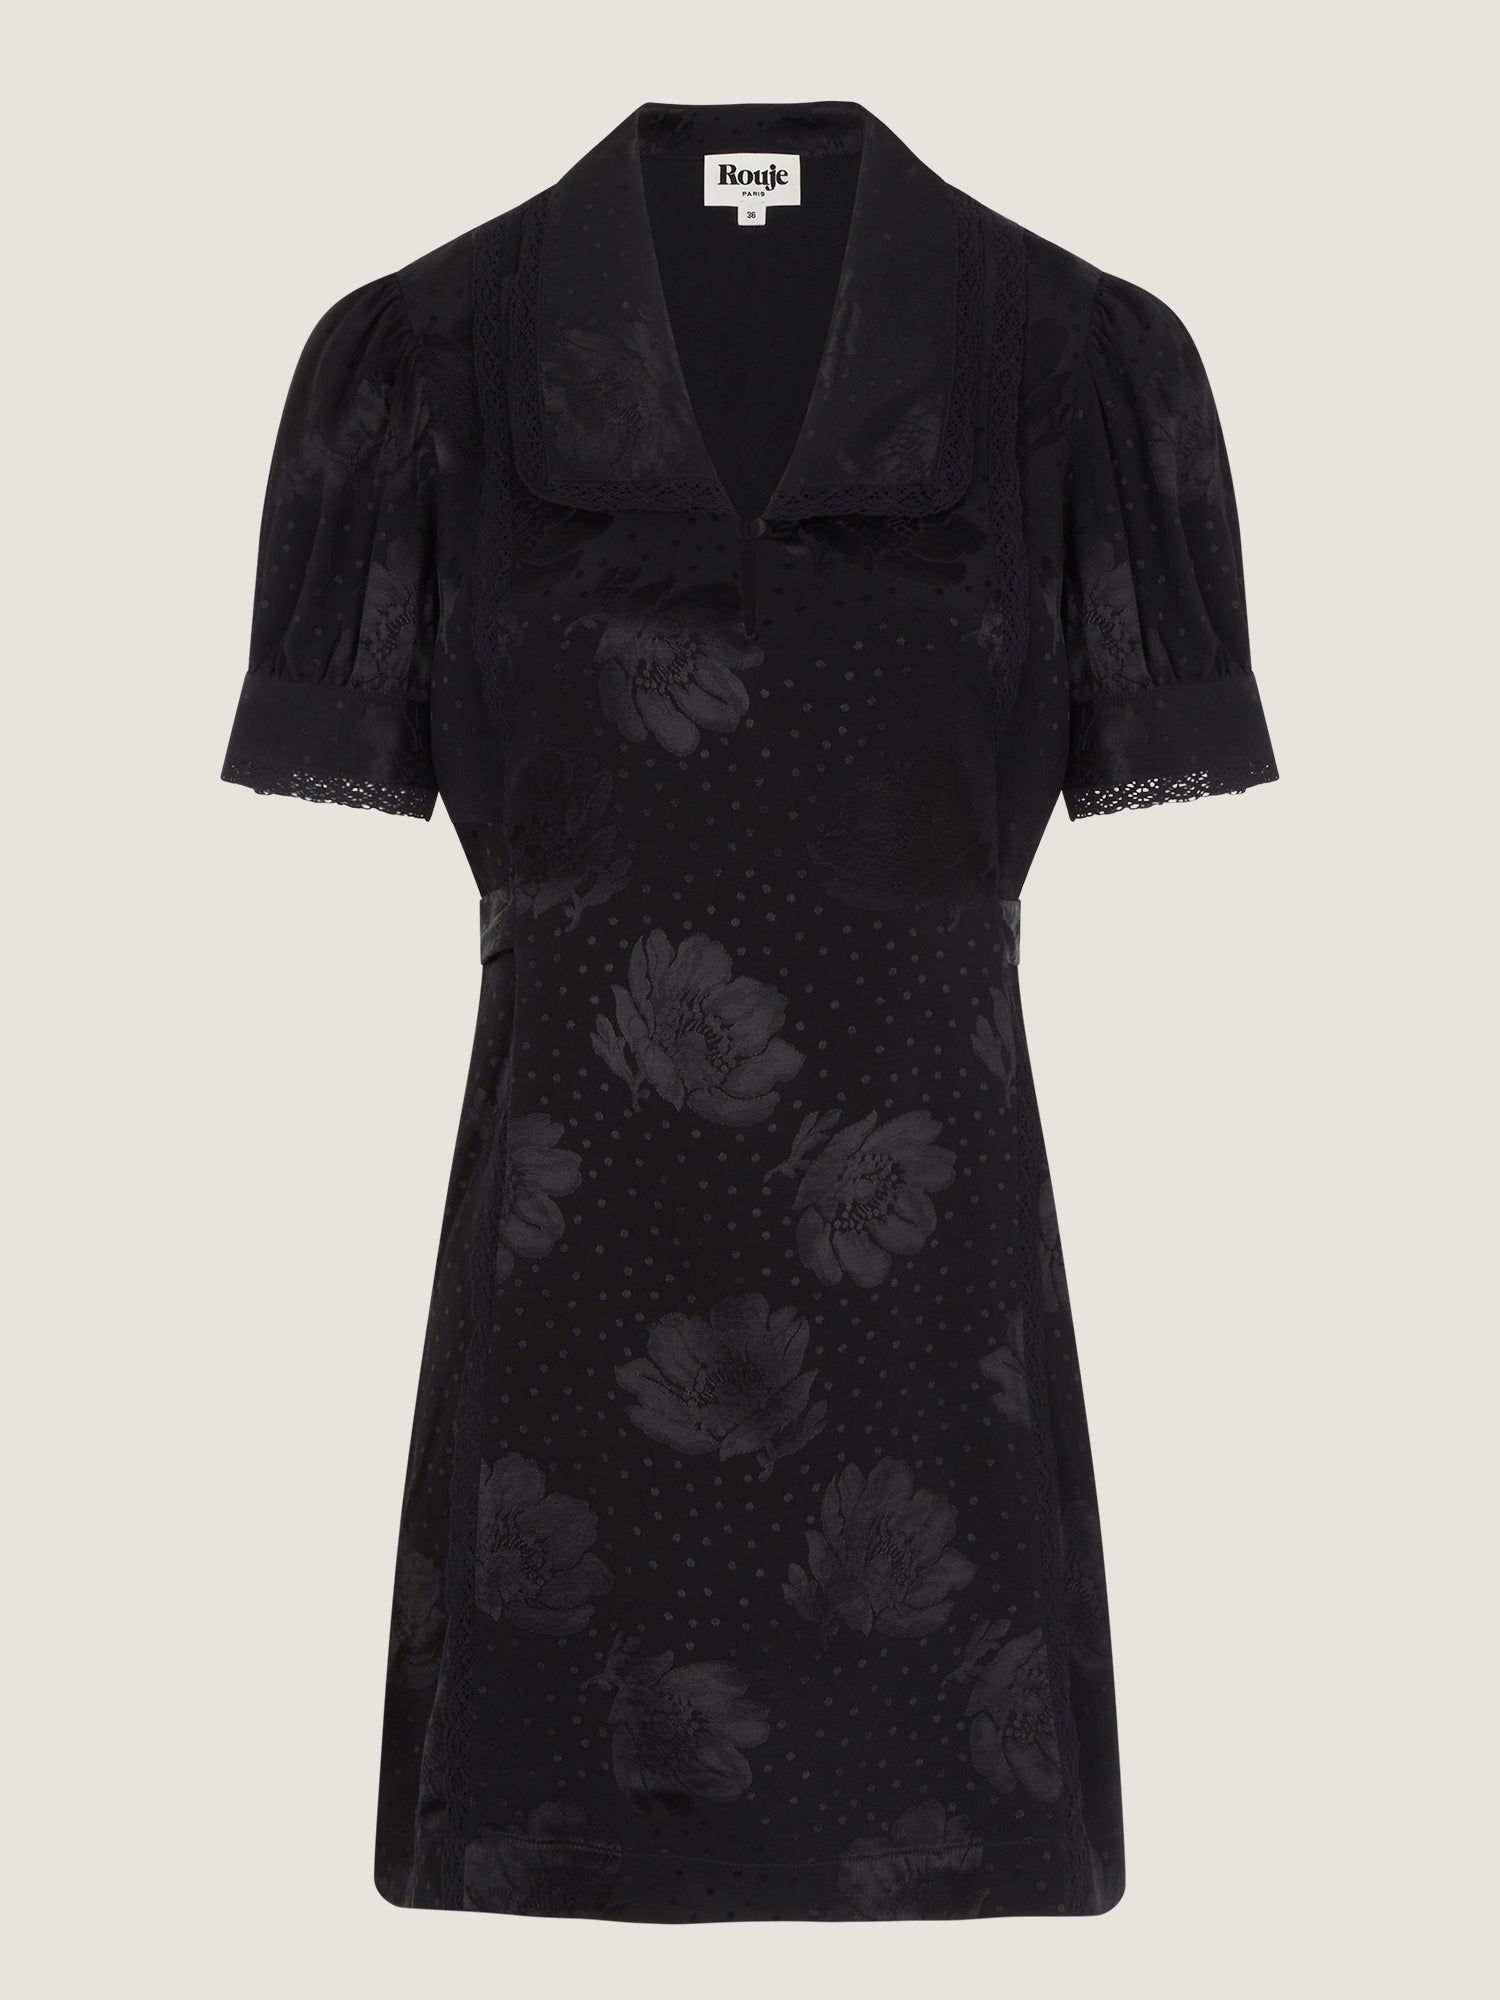 Black jacquard and lace mini dress | Rouje